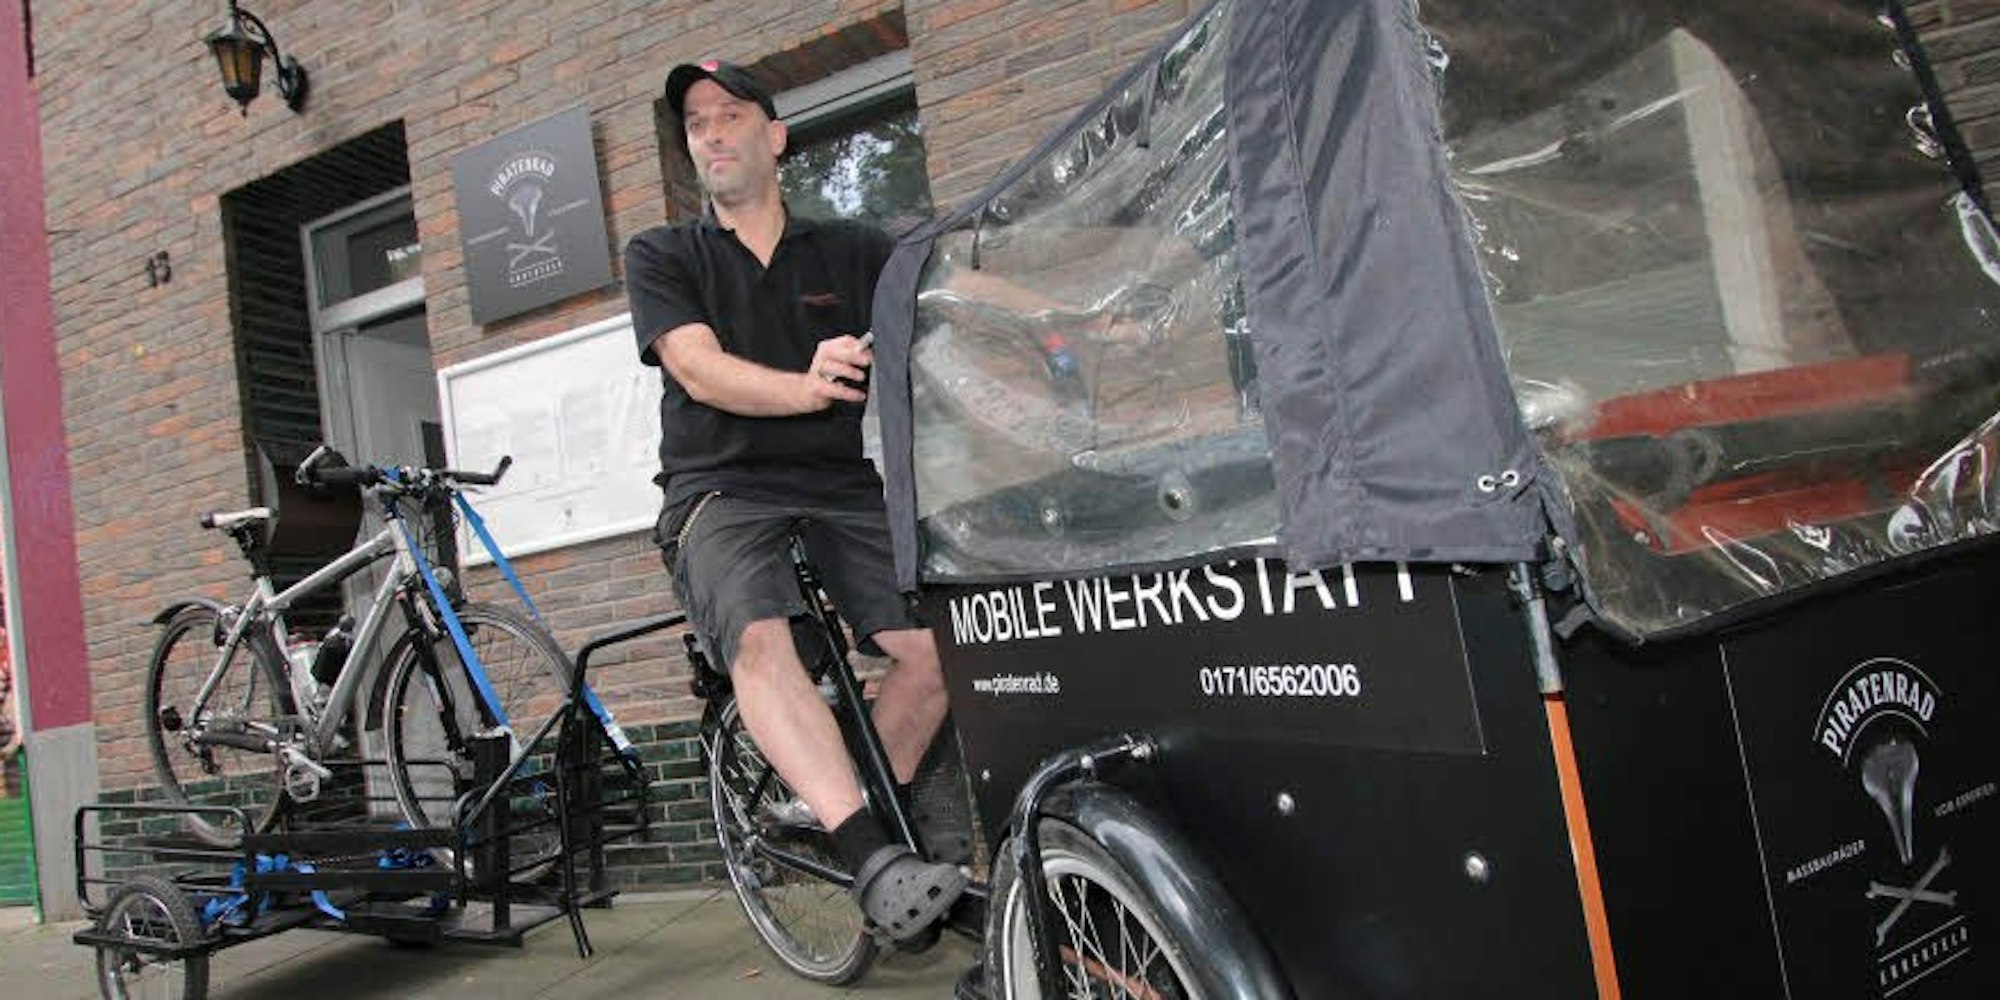 Uwe-Jens Spielmann ist Zweiradmechanikermeister und bietet seinen Kunden eine mobile Fahrradwerkstatt an.